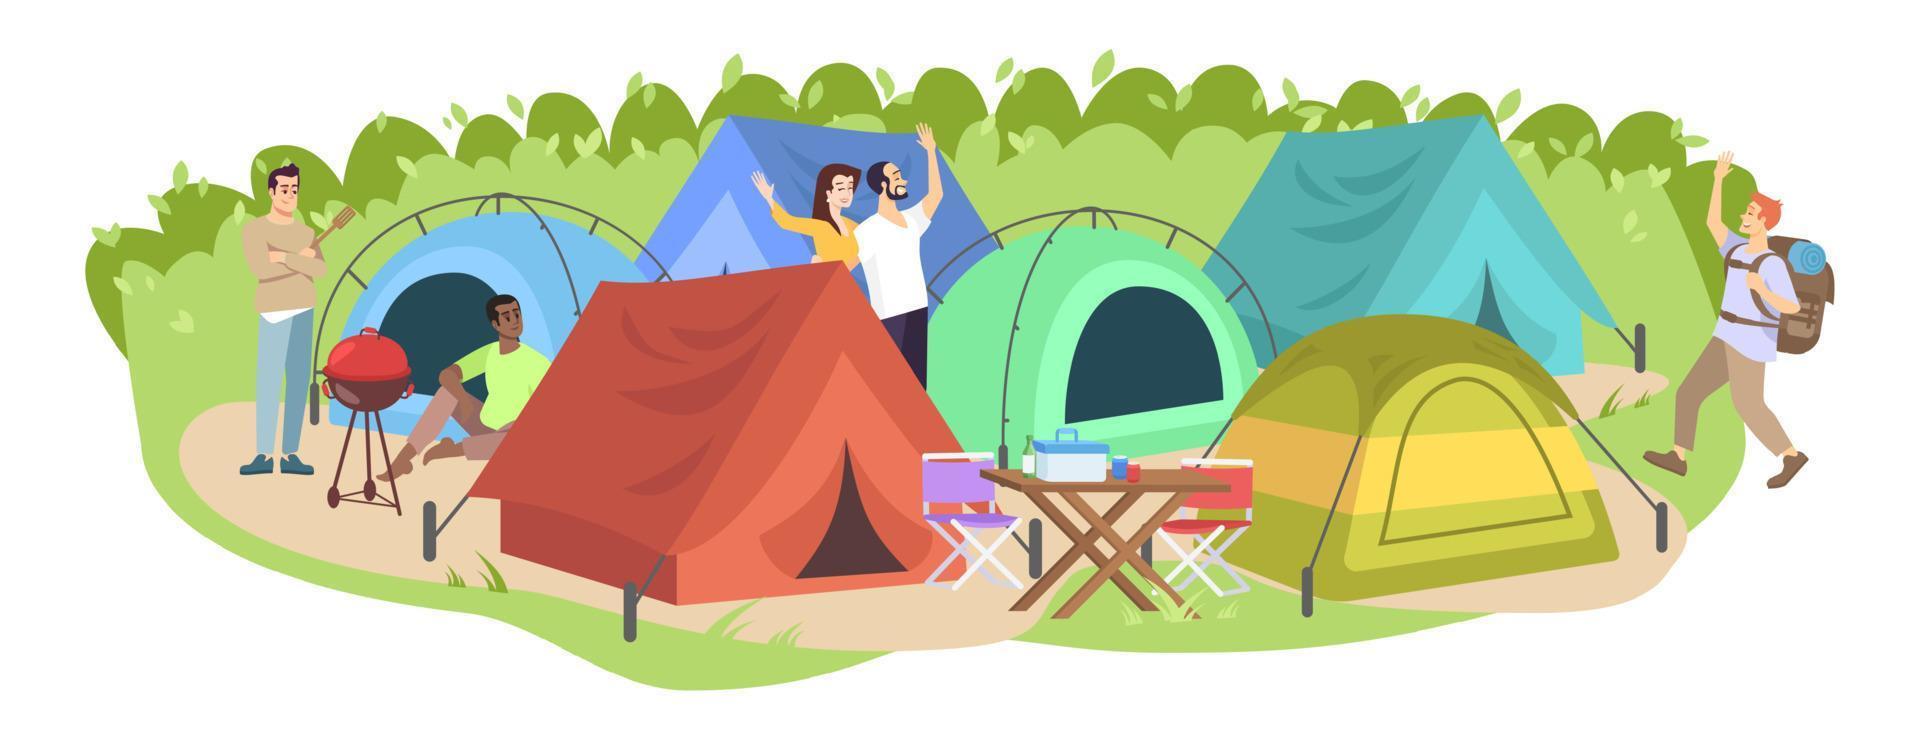 ilustração em vetor plana festival de acampamento. campistas felizes, personagens de desenhos animados de turistas. lazer de férias de verão, piquenique sazonal ao ar livre. parque de tendas, acampamento na floresta isolada no fundo branco